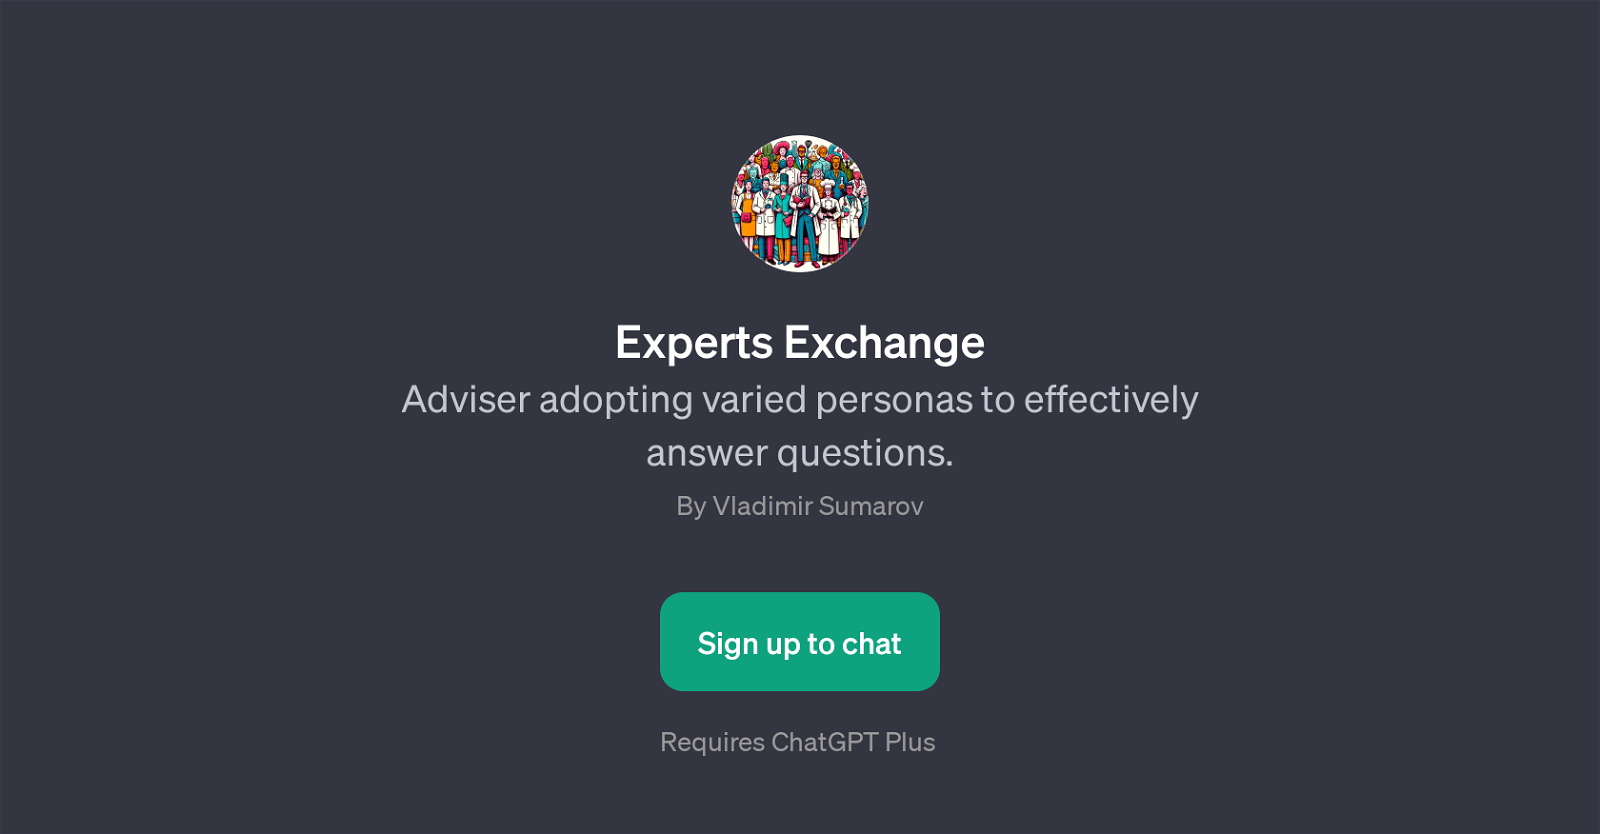 Experts Exchange website